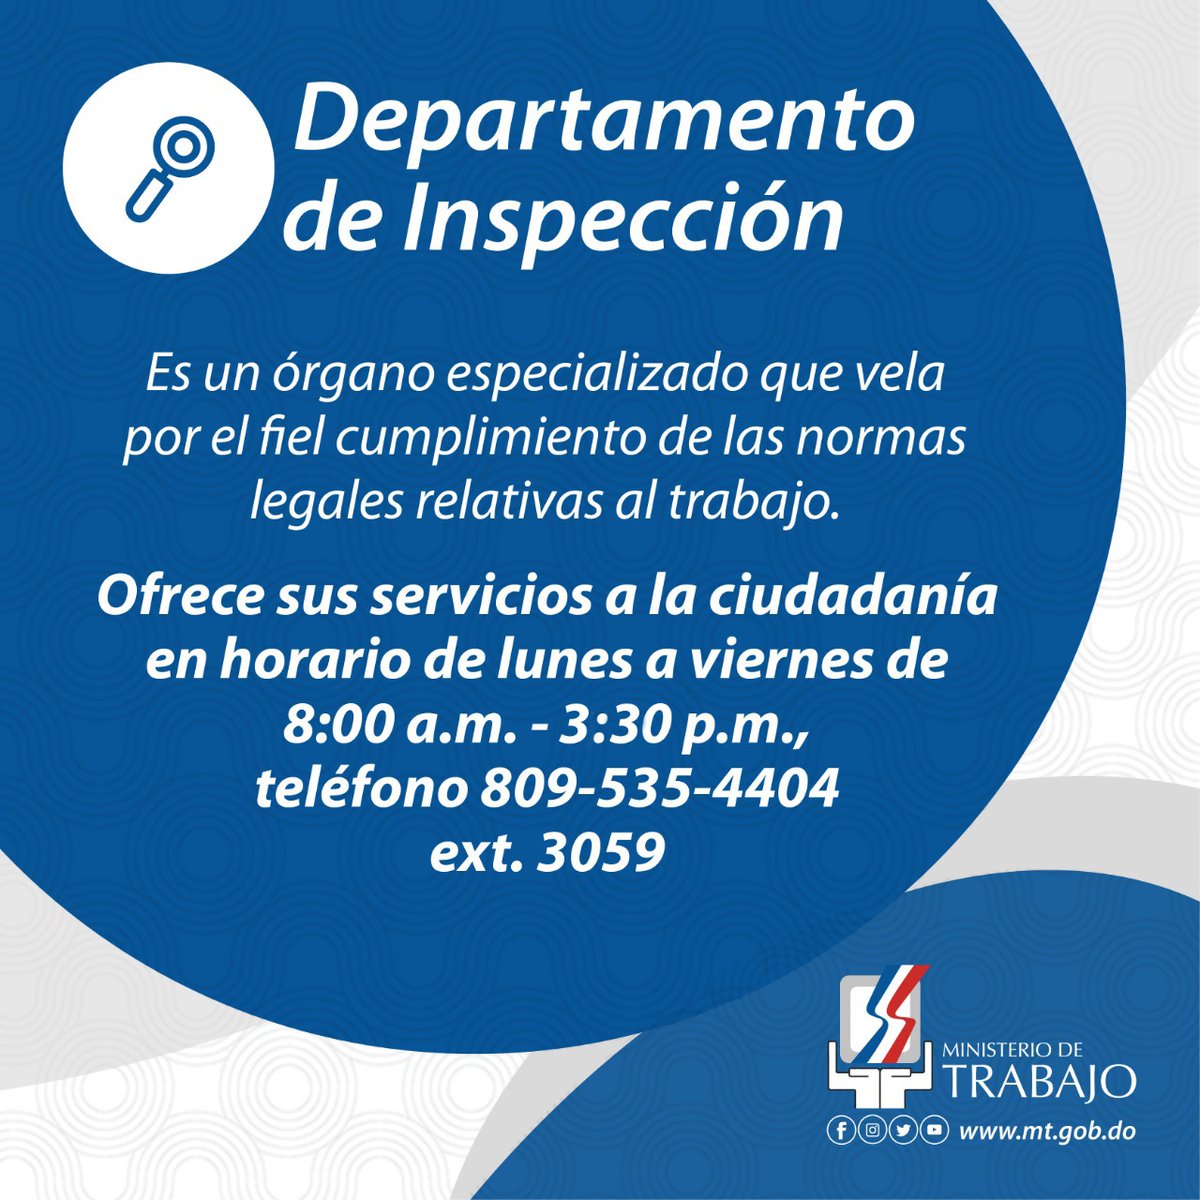 Ministerio de Trabajo 🇩🇴 on Twitter: El de Trabajo a través del Departamento de Inspección ofrece servicios a la ciudadanía. Cualquier inquietud puede comunicarse al teléfono 809-535-4404 extensión 3059.